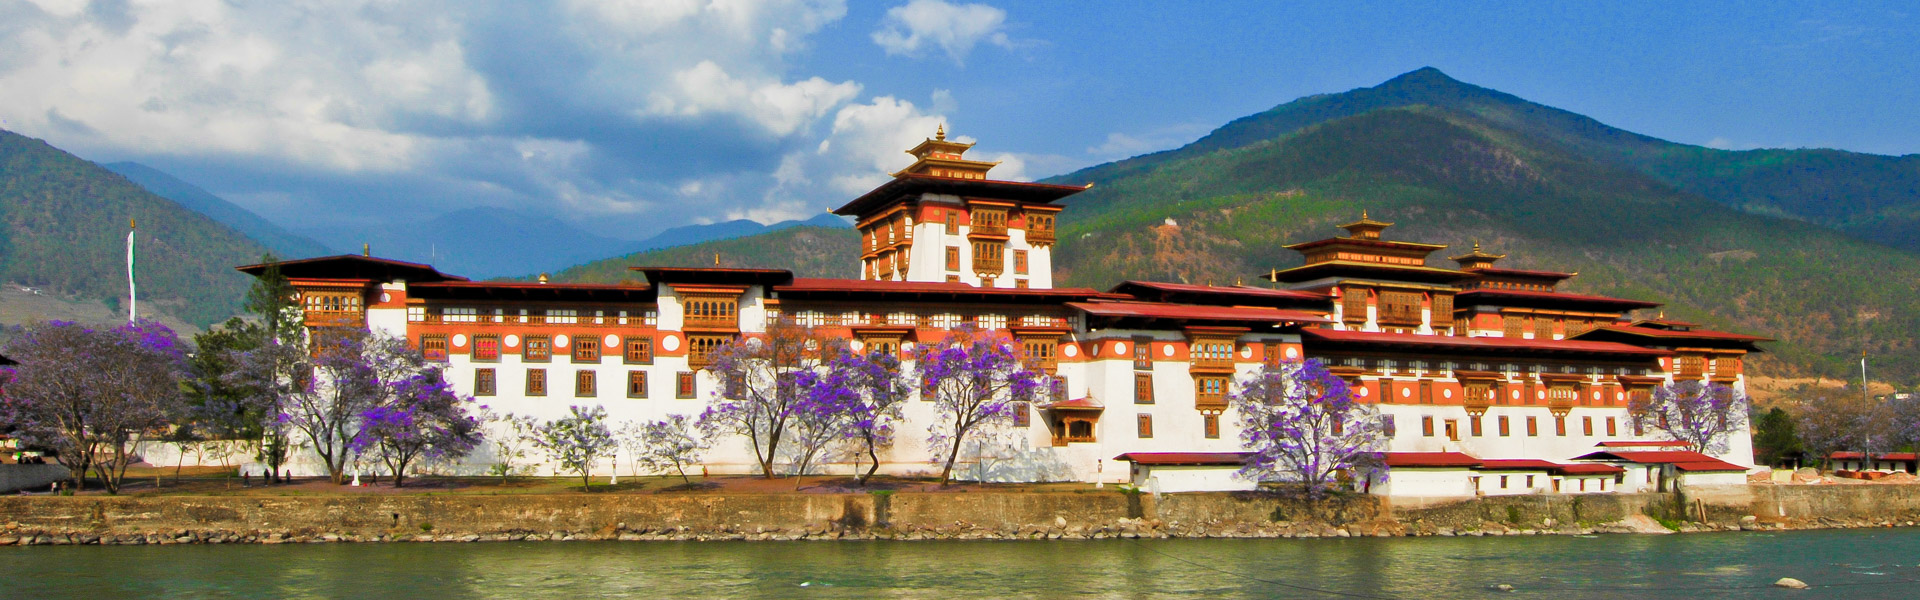 The phantastic Punakha Dzong, Bhutan